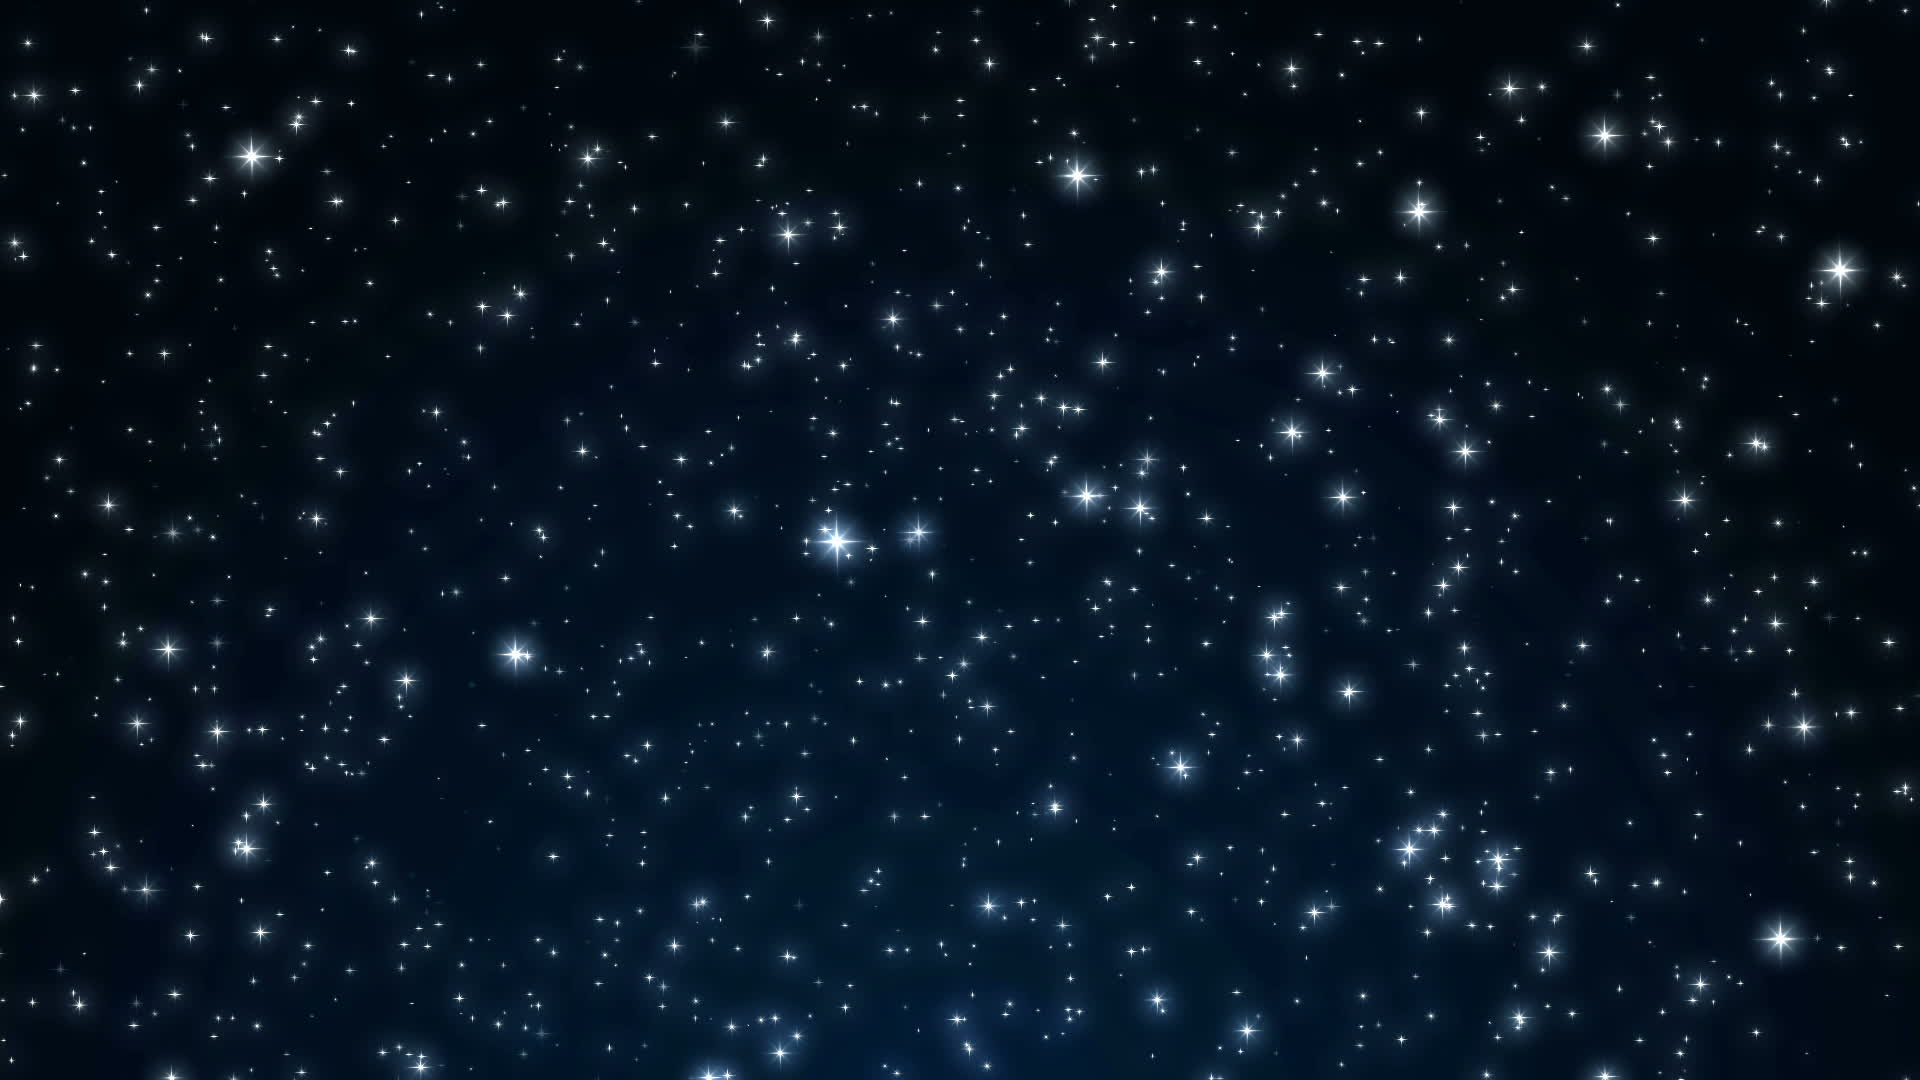 Sao! Những ngôi sao lấp lánh trên bầu trời đêm đã trở thành niềm đam mê của rất nhiều người trong thế giới hiện đại này. Bạn có muốn khám phá những hình ảnh tuyệt đẹp của vũ trụ và những ngôi sao lấp lánh không?